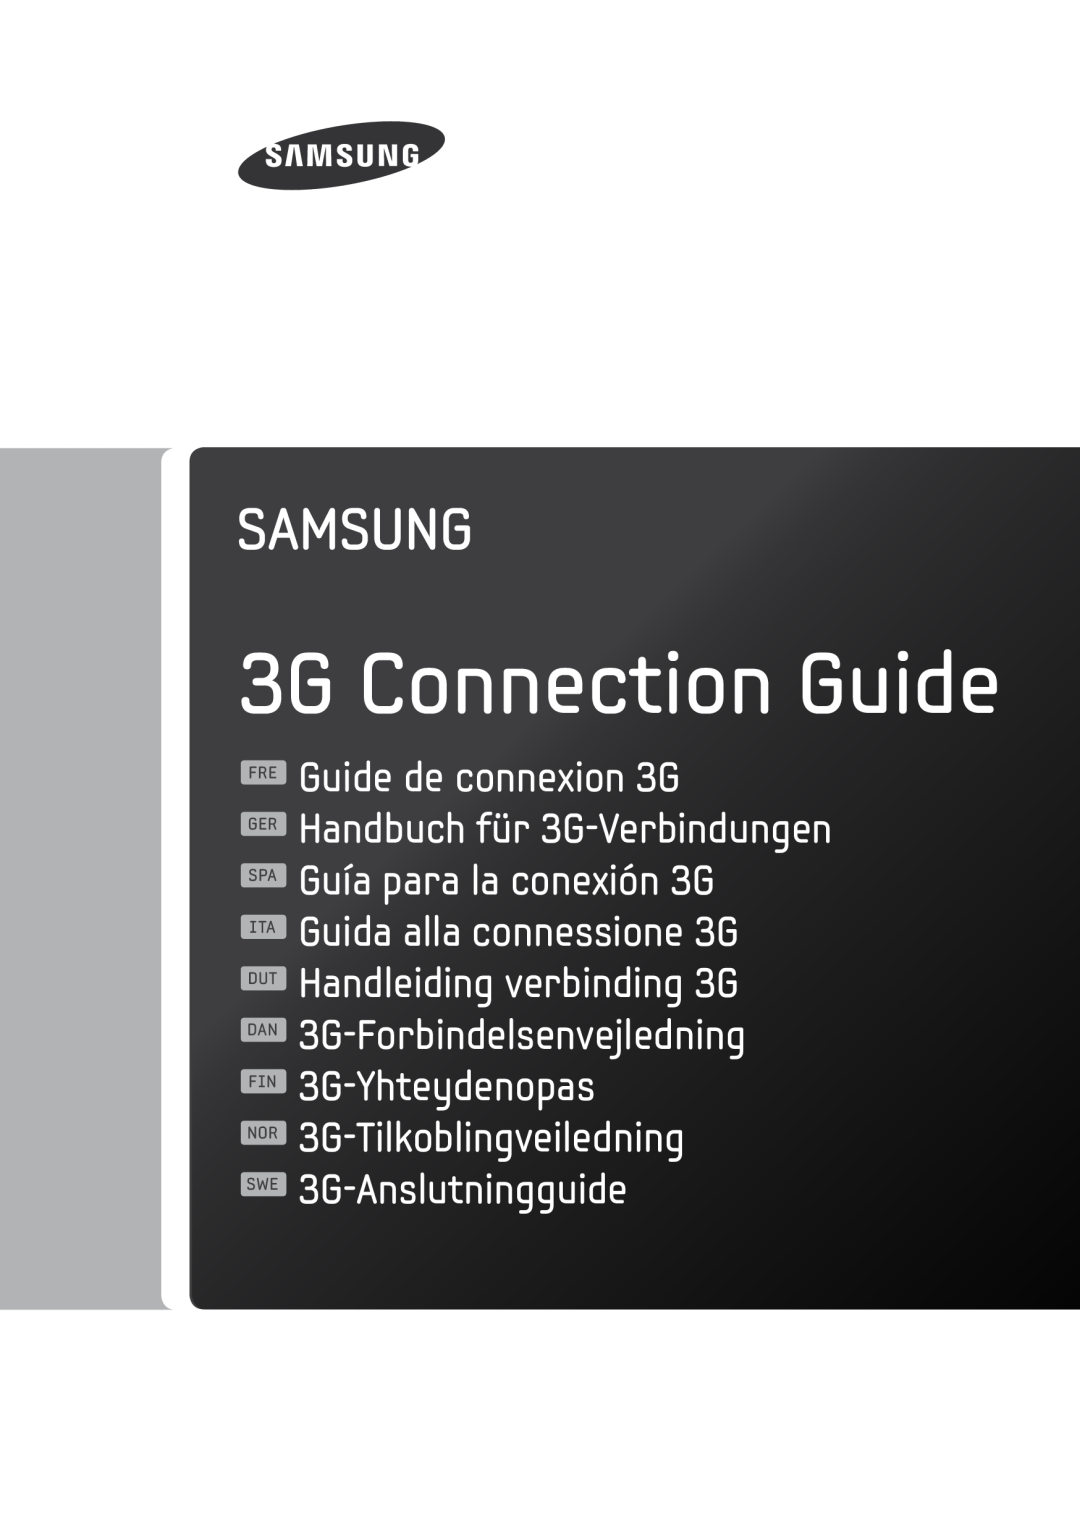 Samsung XE500C21-A03DE manual 3G Connection Guide, 3G-Forbindelsenvejledning 3G-Yhteydenopas 3G-Tilkoblingveiledning 